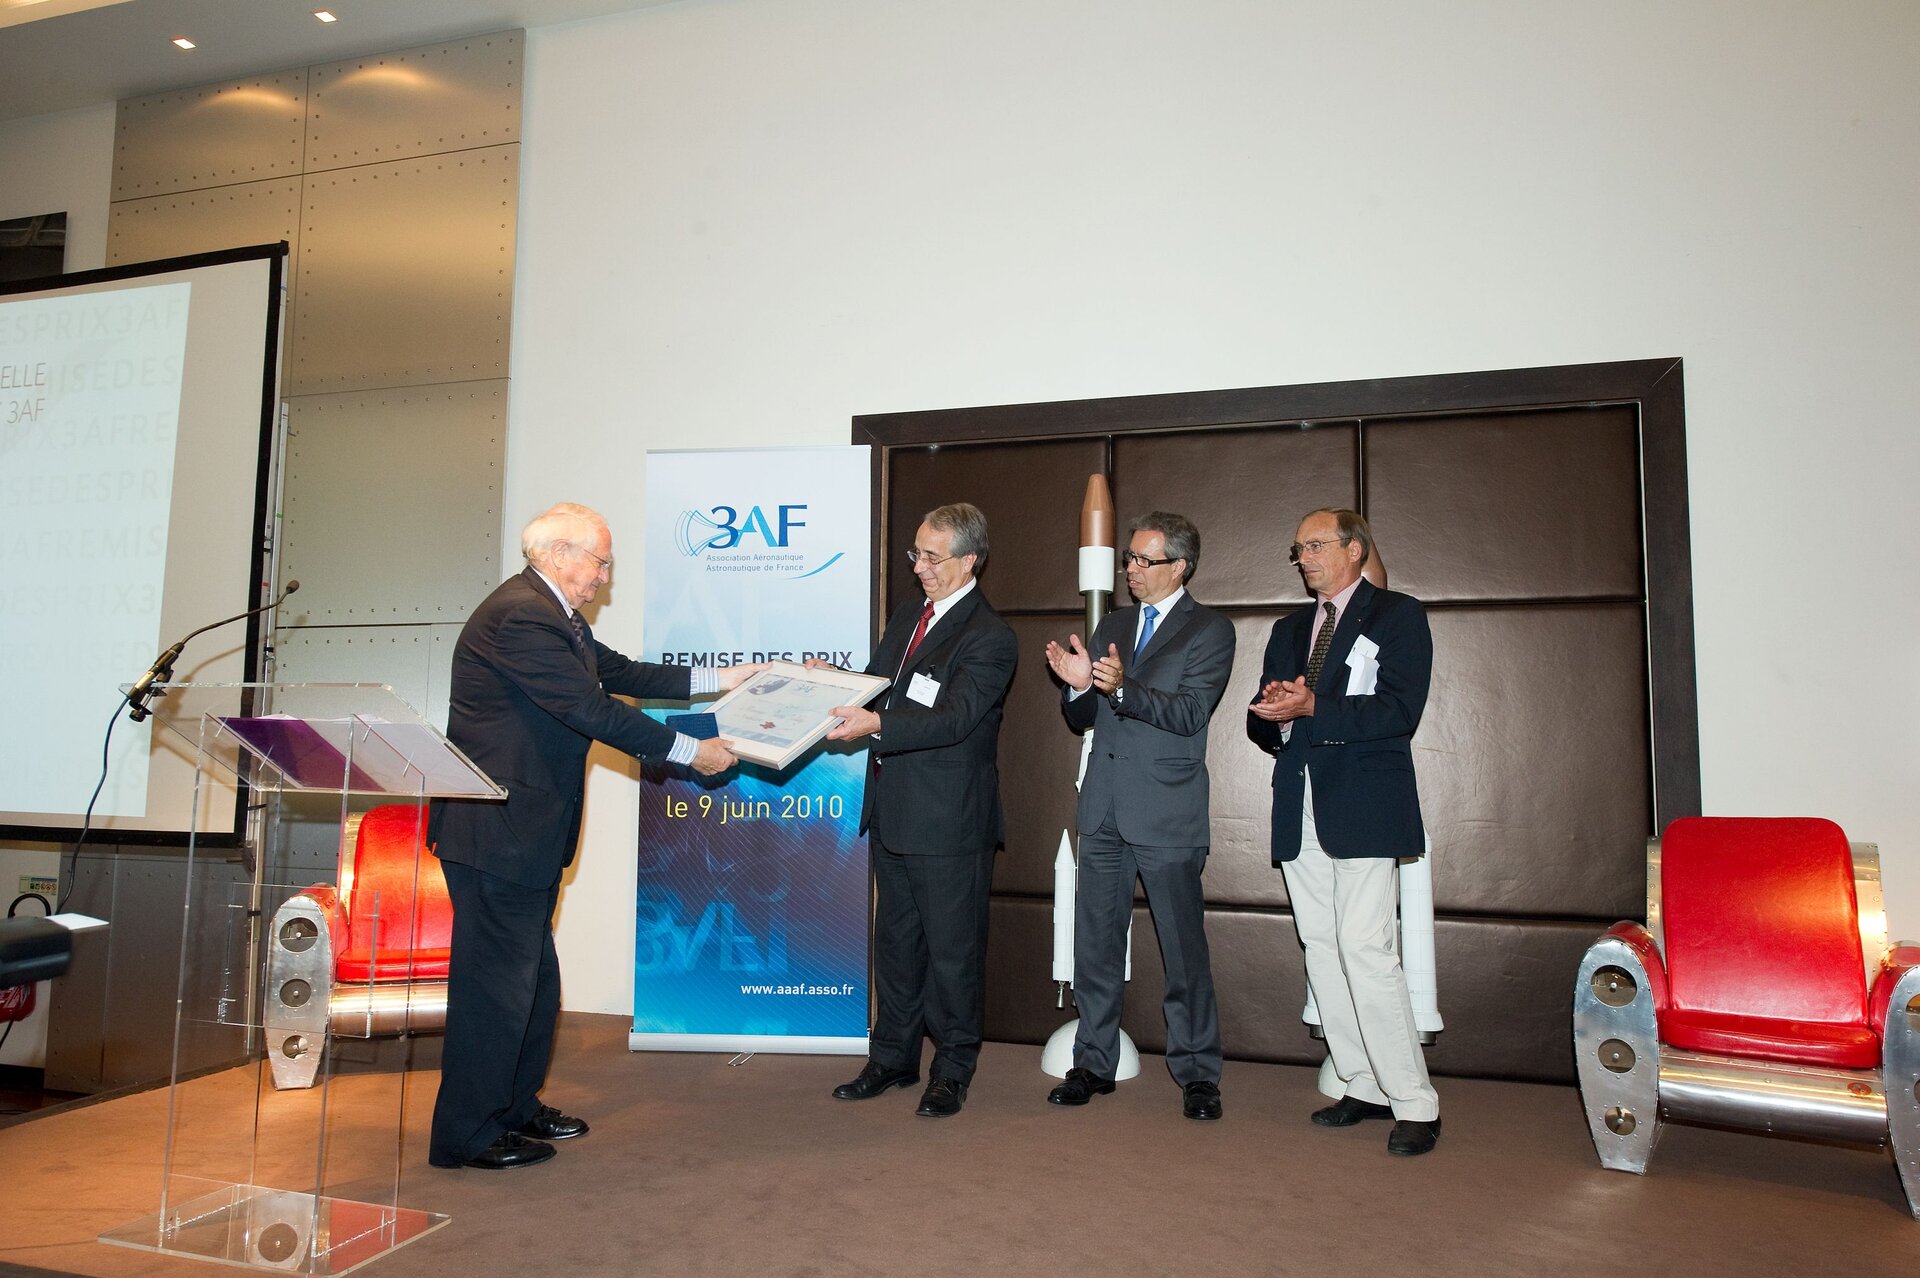 La ceremonia de entrega del AAAF Grand Prix 2010 a Herschel y a Planck